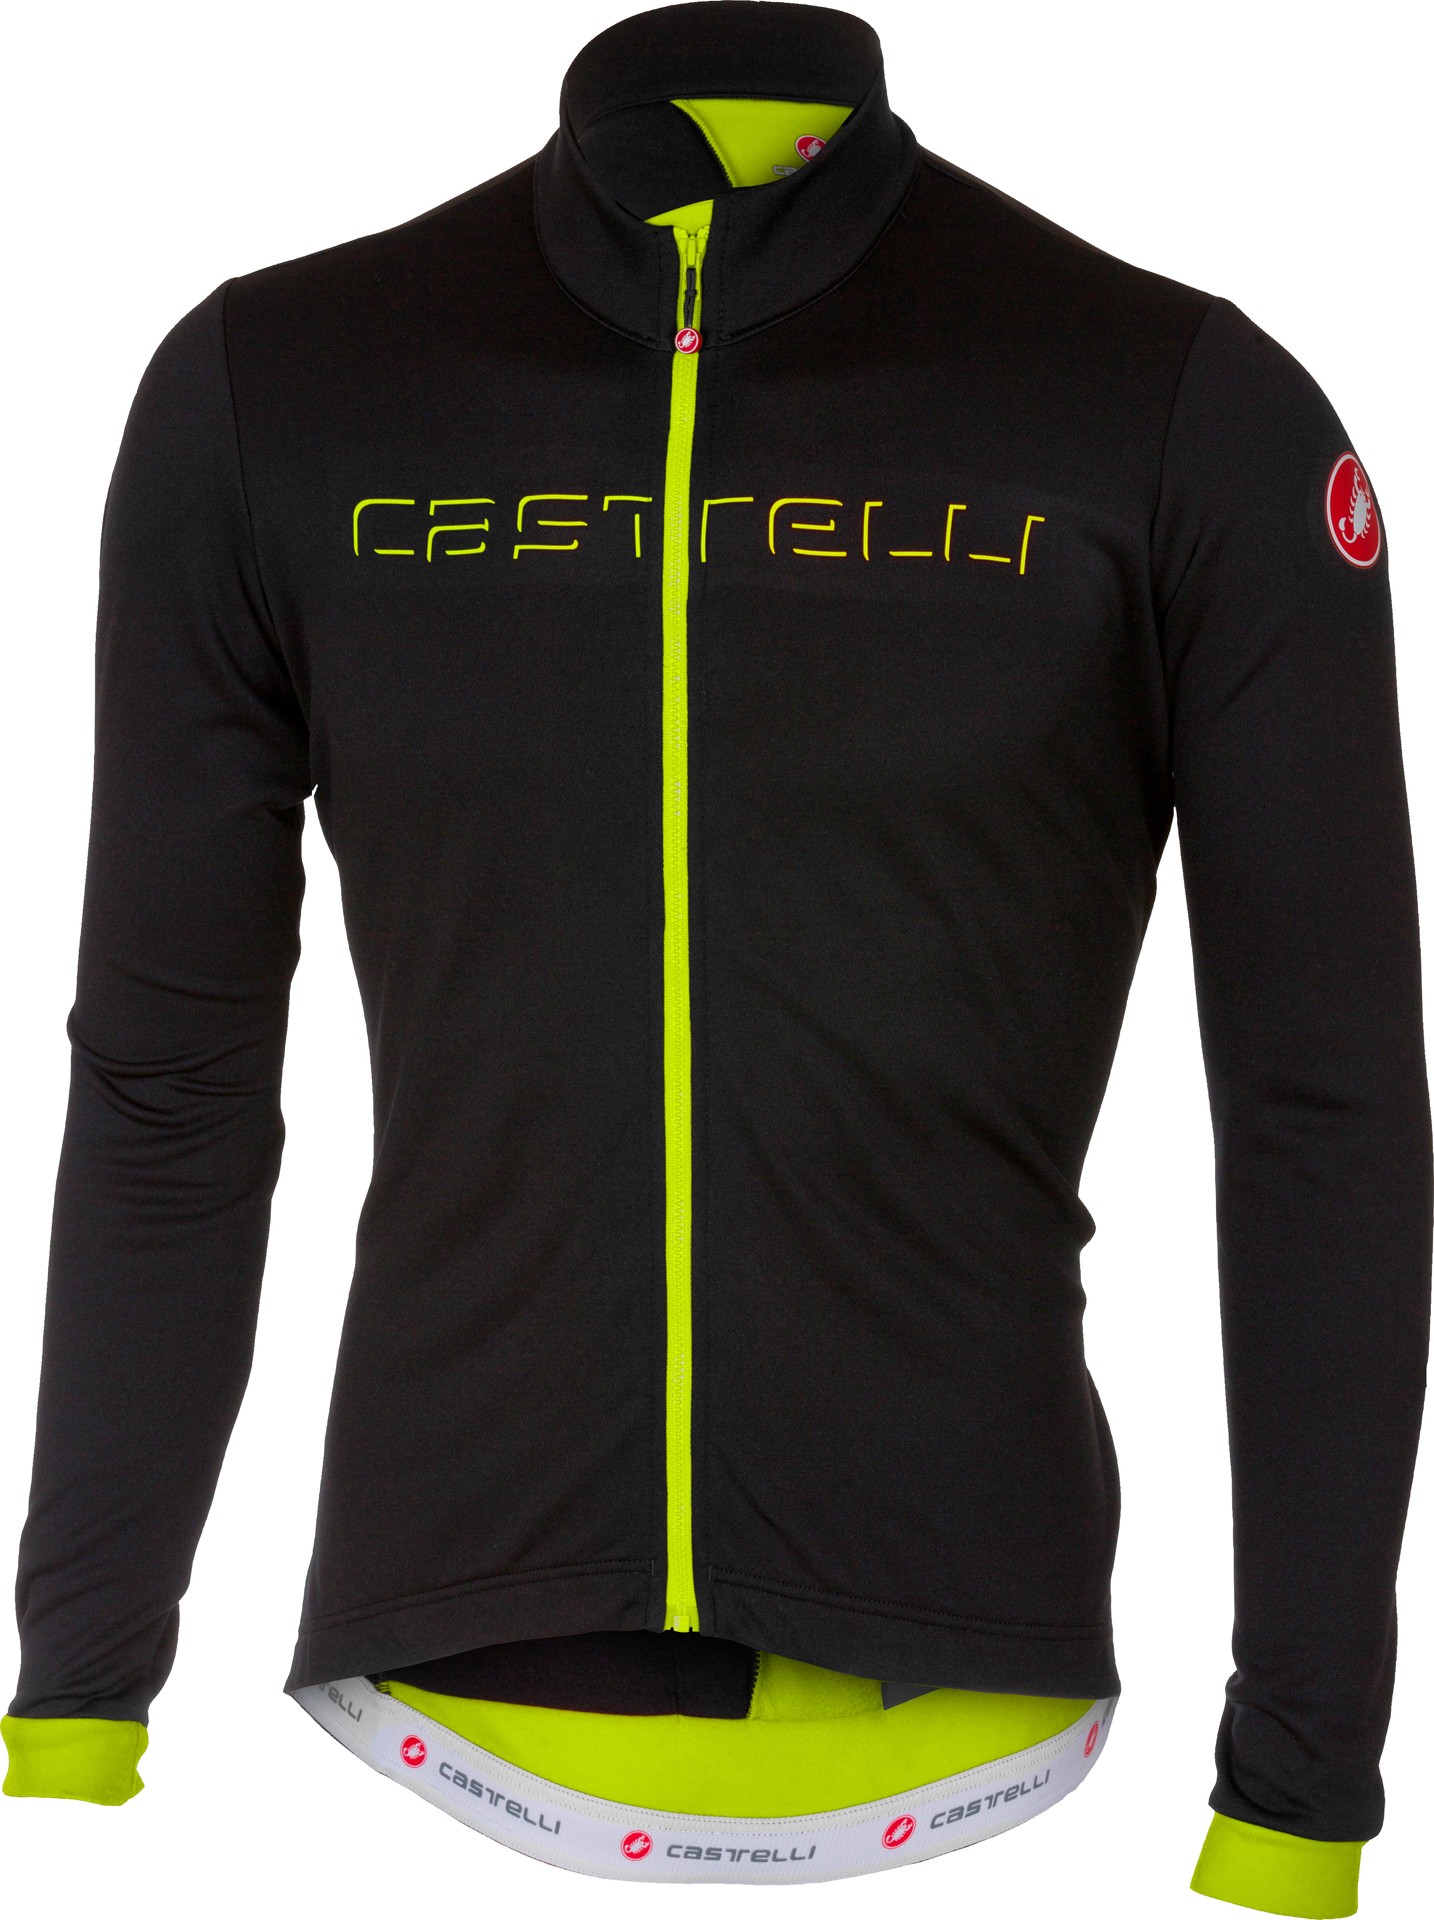 Castelli fondo maillot de cyclisme manches longues noir clair fluo jaune